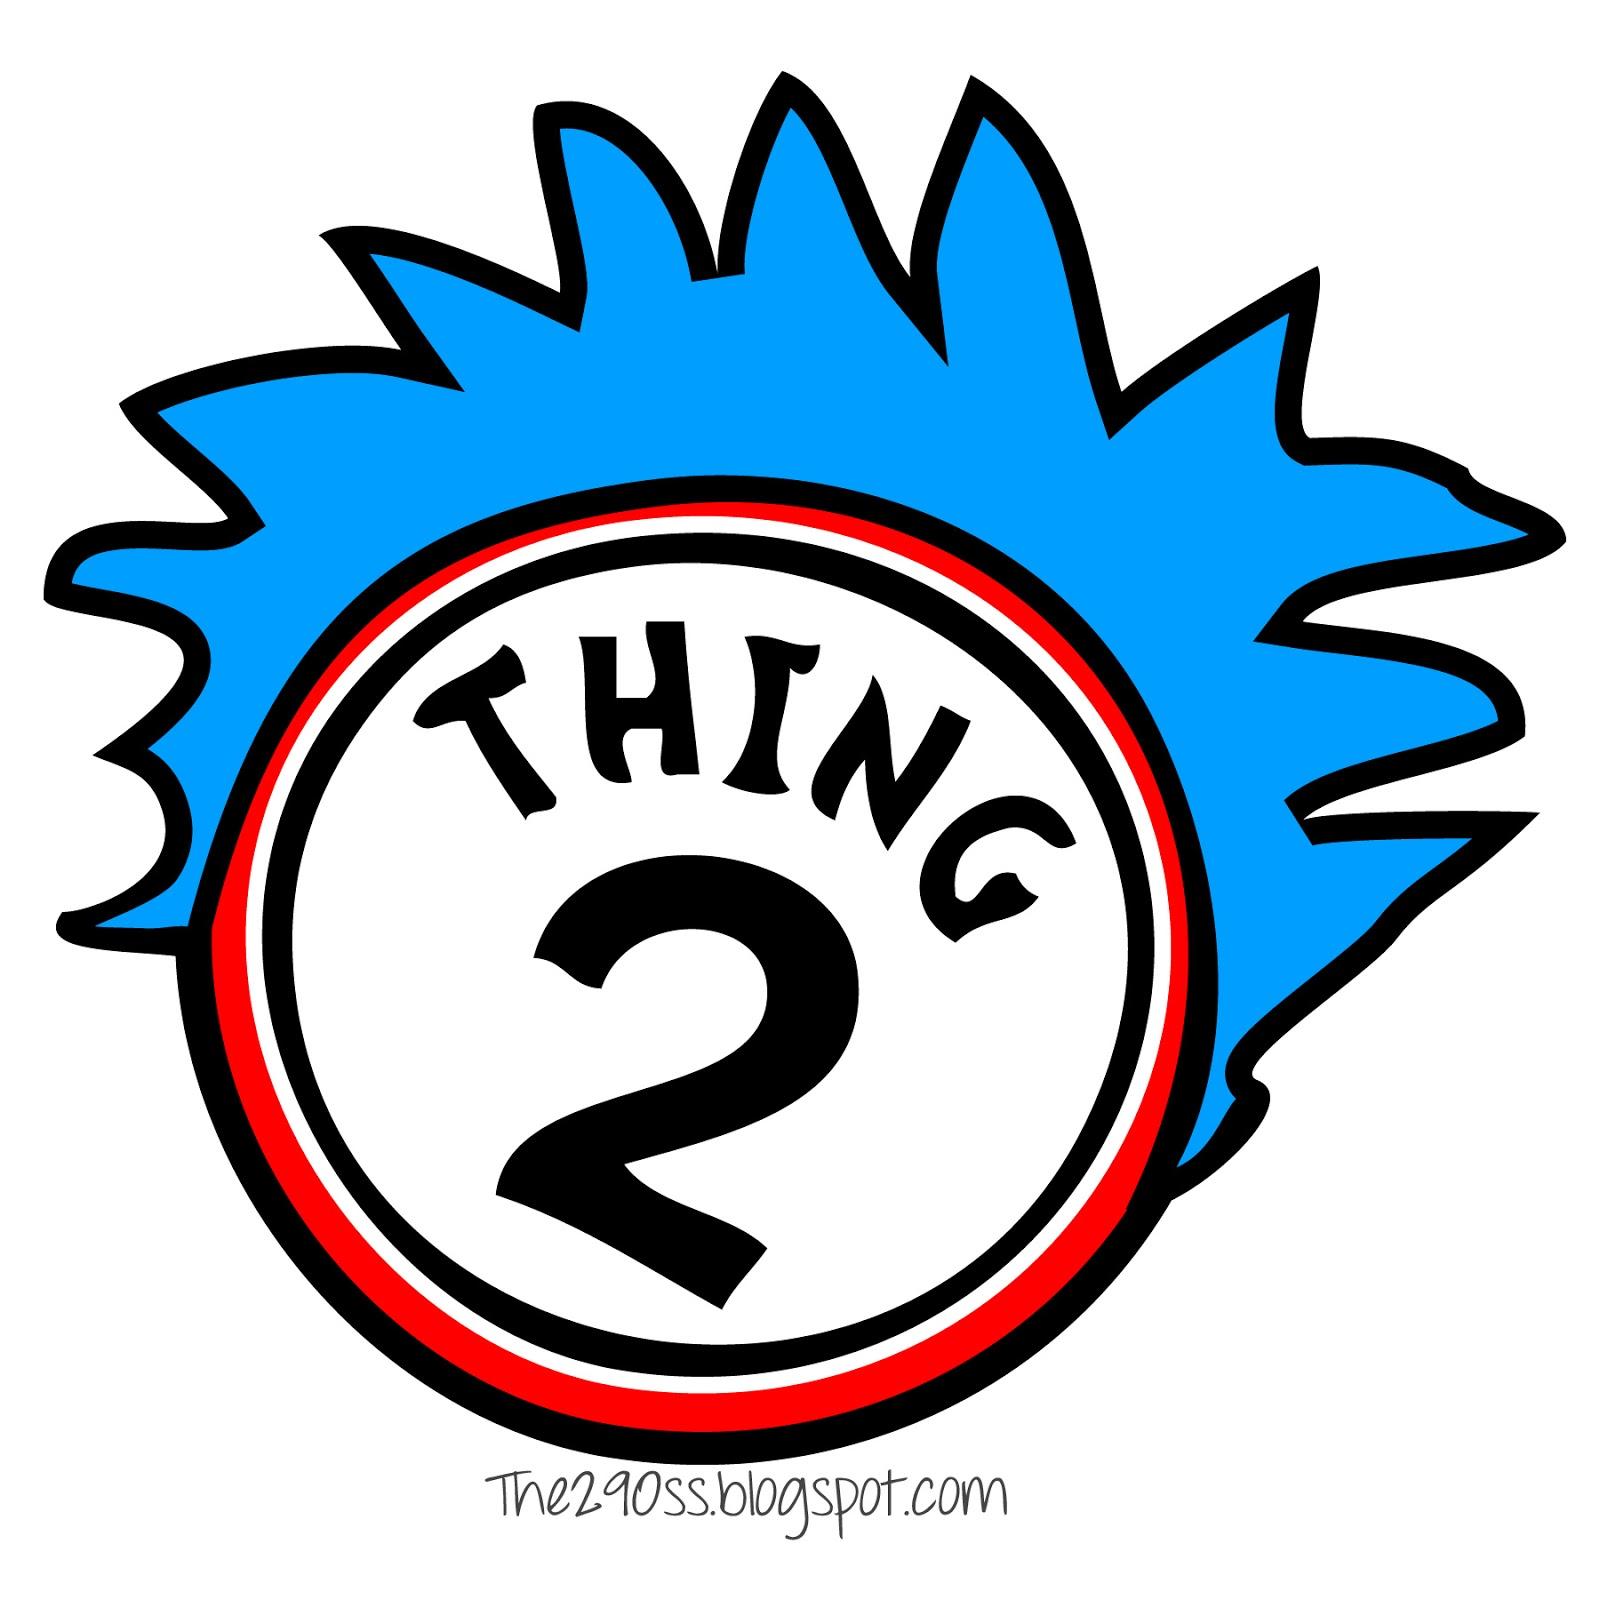 printable-thing-1-logo-darwing-free-image-download